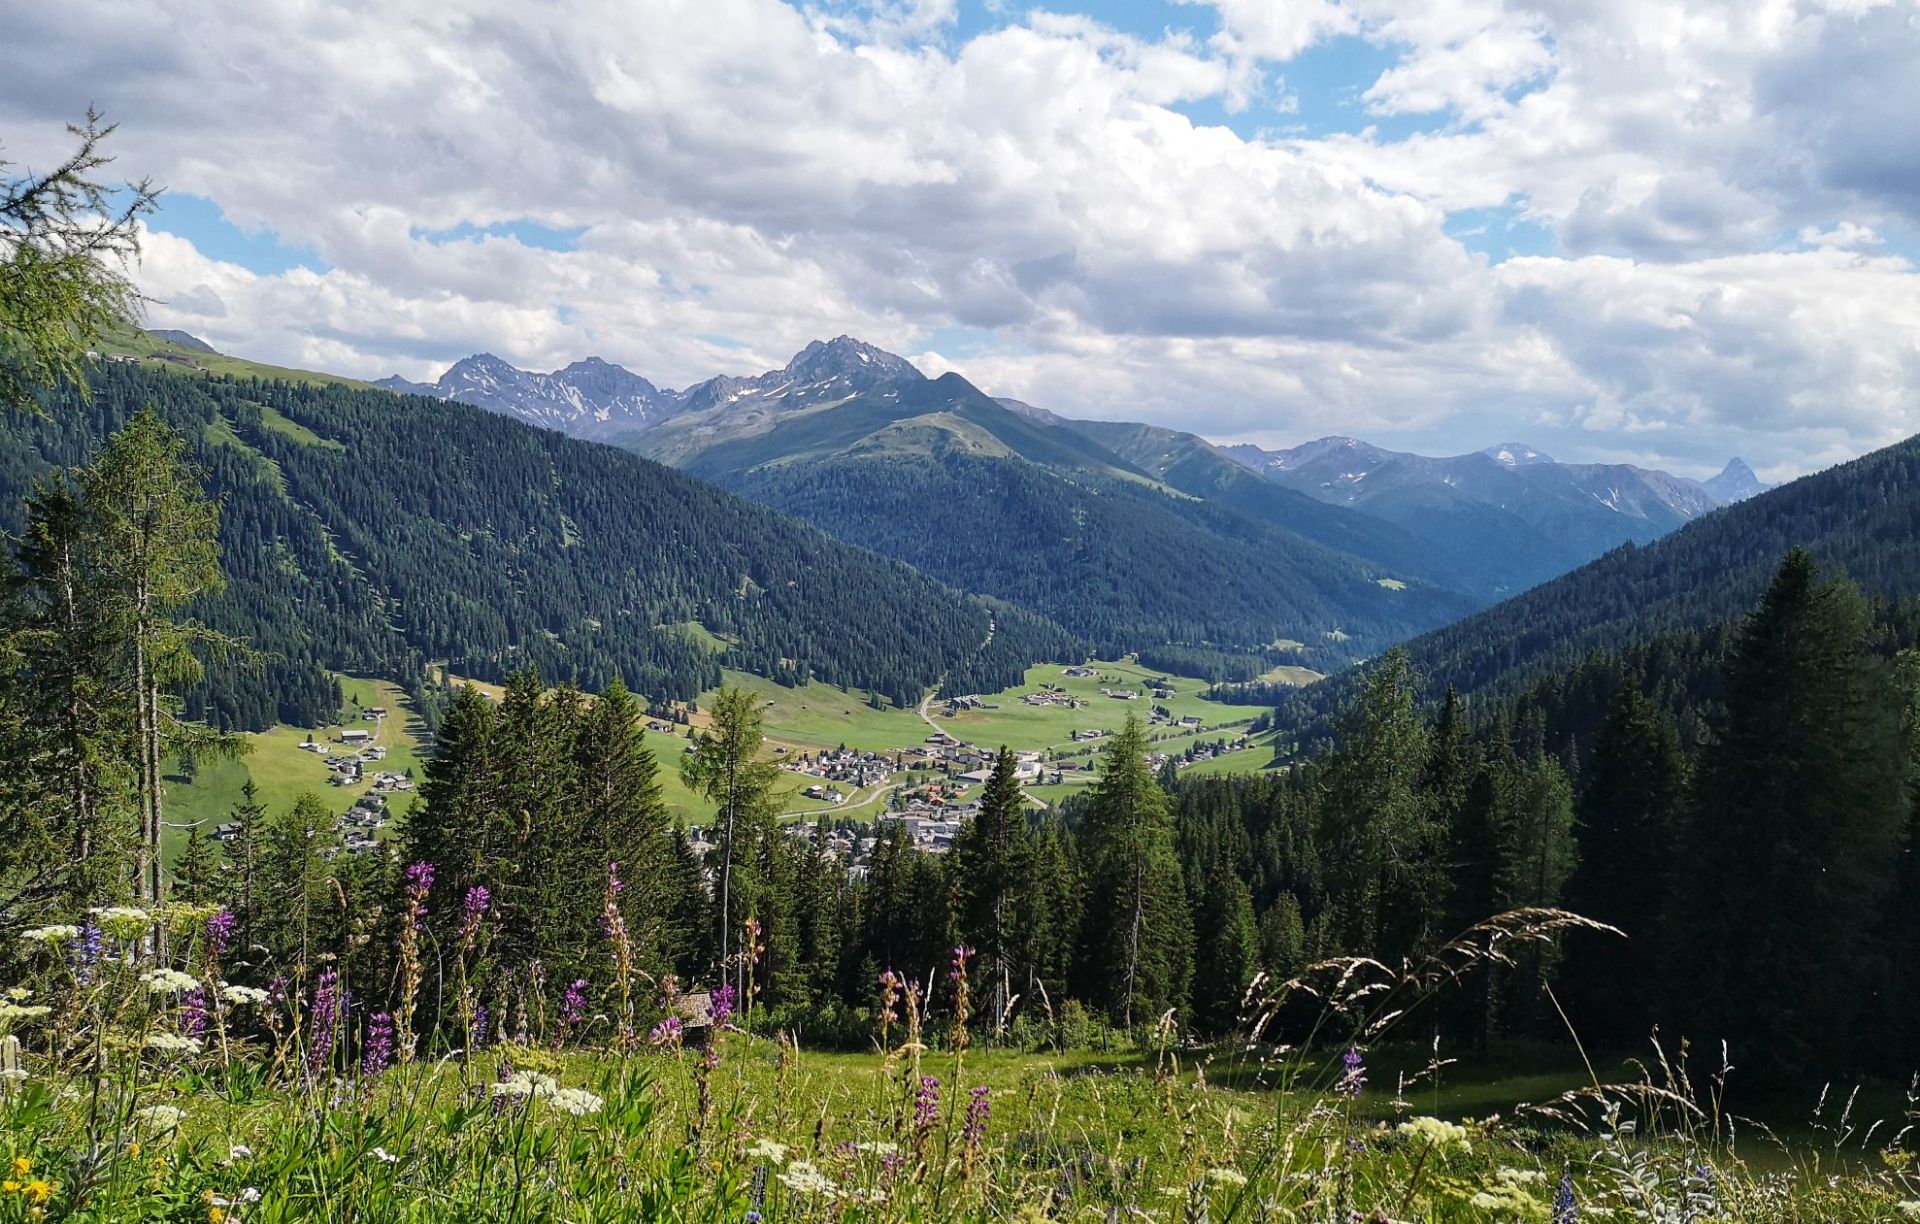 小镇达沃斯  达沃斯（Davos）位于瑞士东南部格里松斯德语地区，靠近奥地利边境，是阿尔卑斯山系海拔